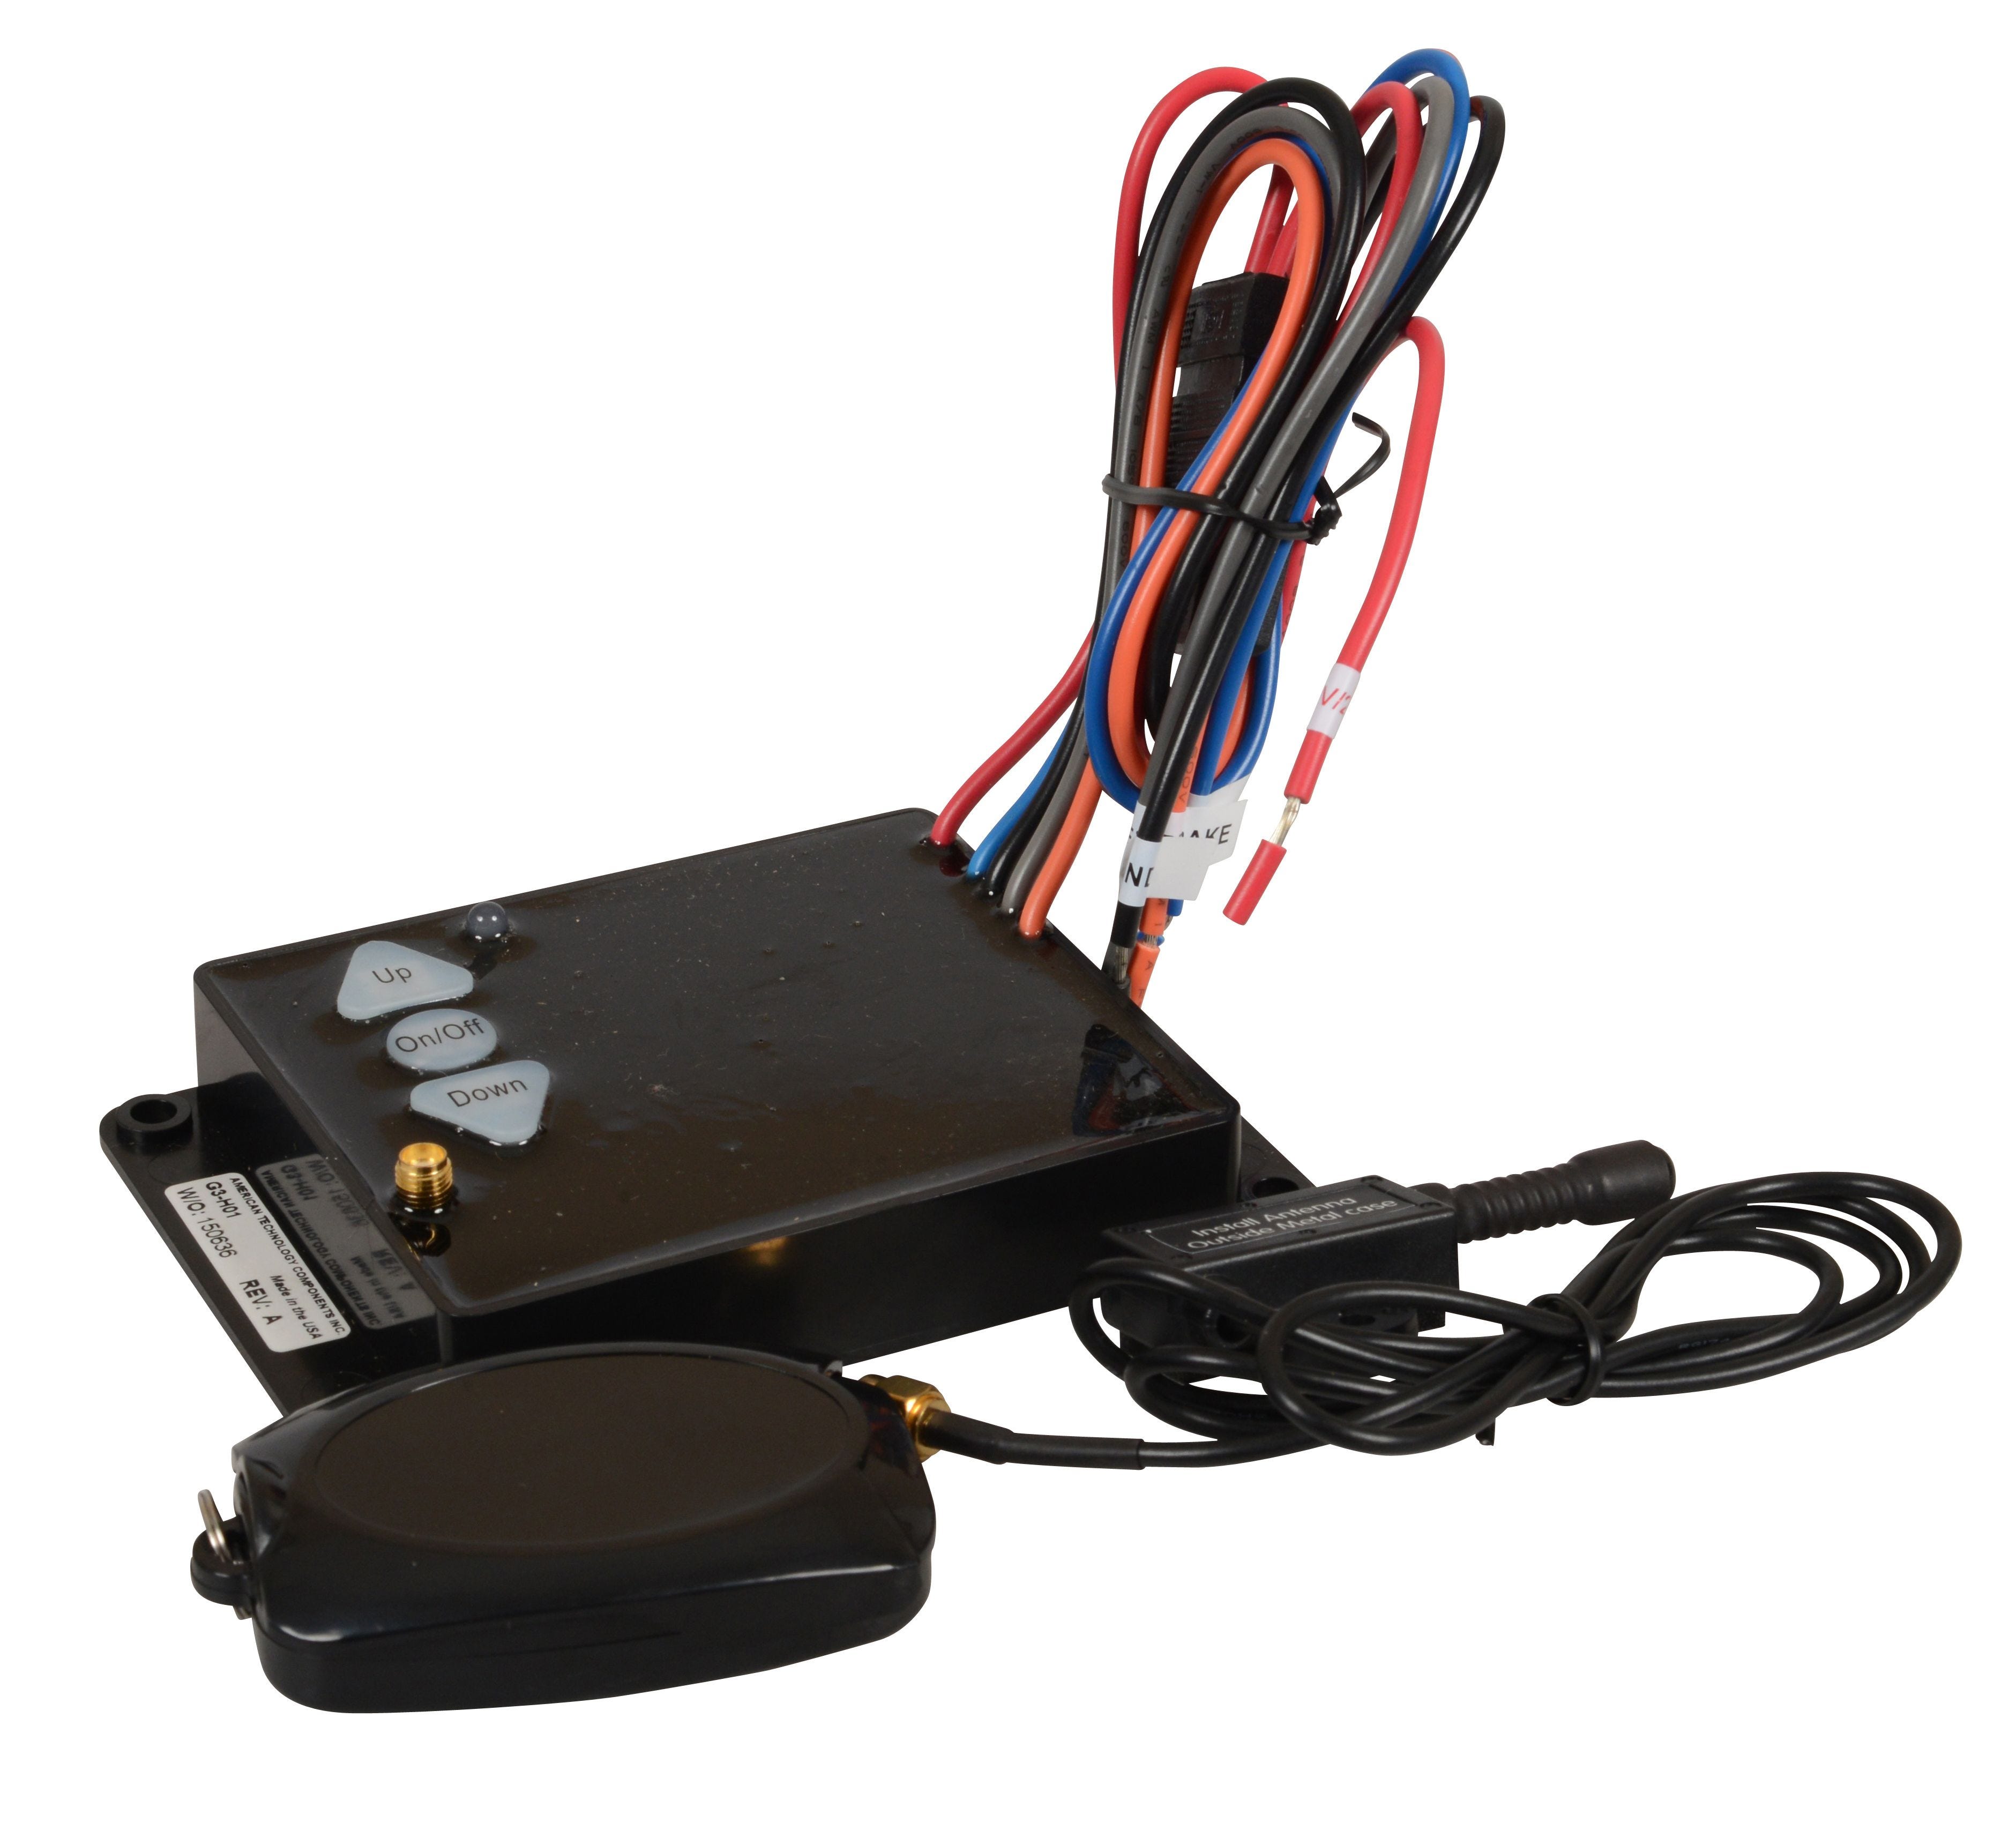 G3-H01 Hydraulic Wireless Remote Dump Trailer Control System